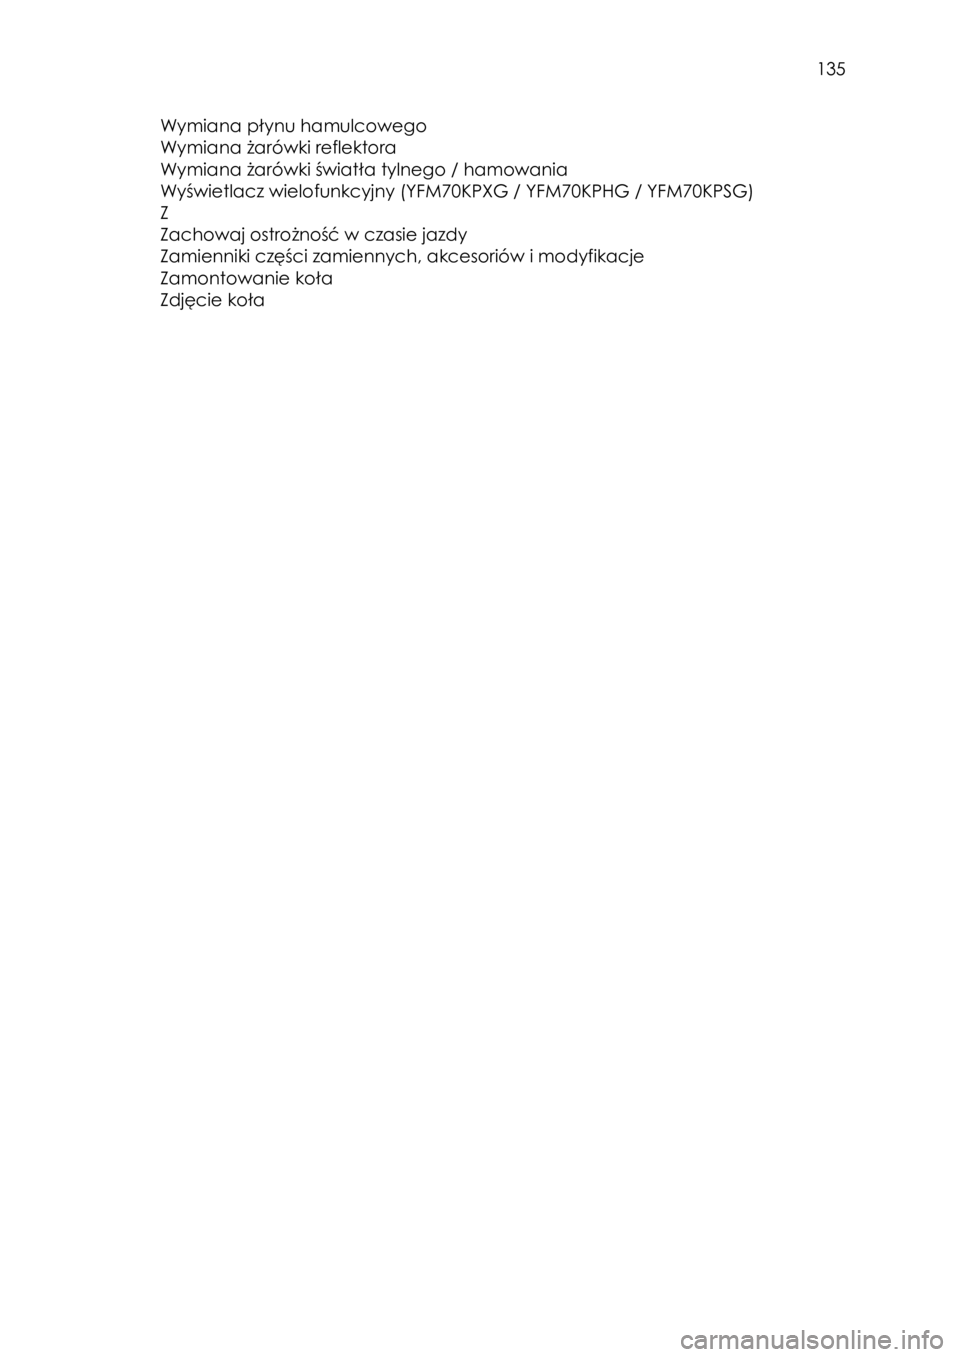 YAMAHA KODIAK 700 2015  Instrukcja obsługi (in Polish)  135 
Wymiana płynu hamulcowego  
Wymiana żarówki reflektora  
Wymiana żarówki światła tylnego / hamowania 
Wyświetlacz wielofunkcyjny (YFM70KPXG / YFM70KPHG / YFM70KPSG) 
Z 
Zachowaj ostrożn